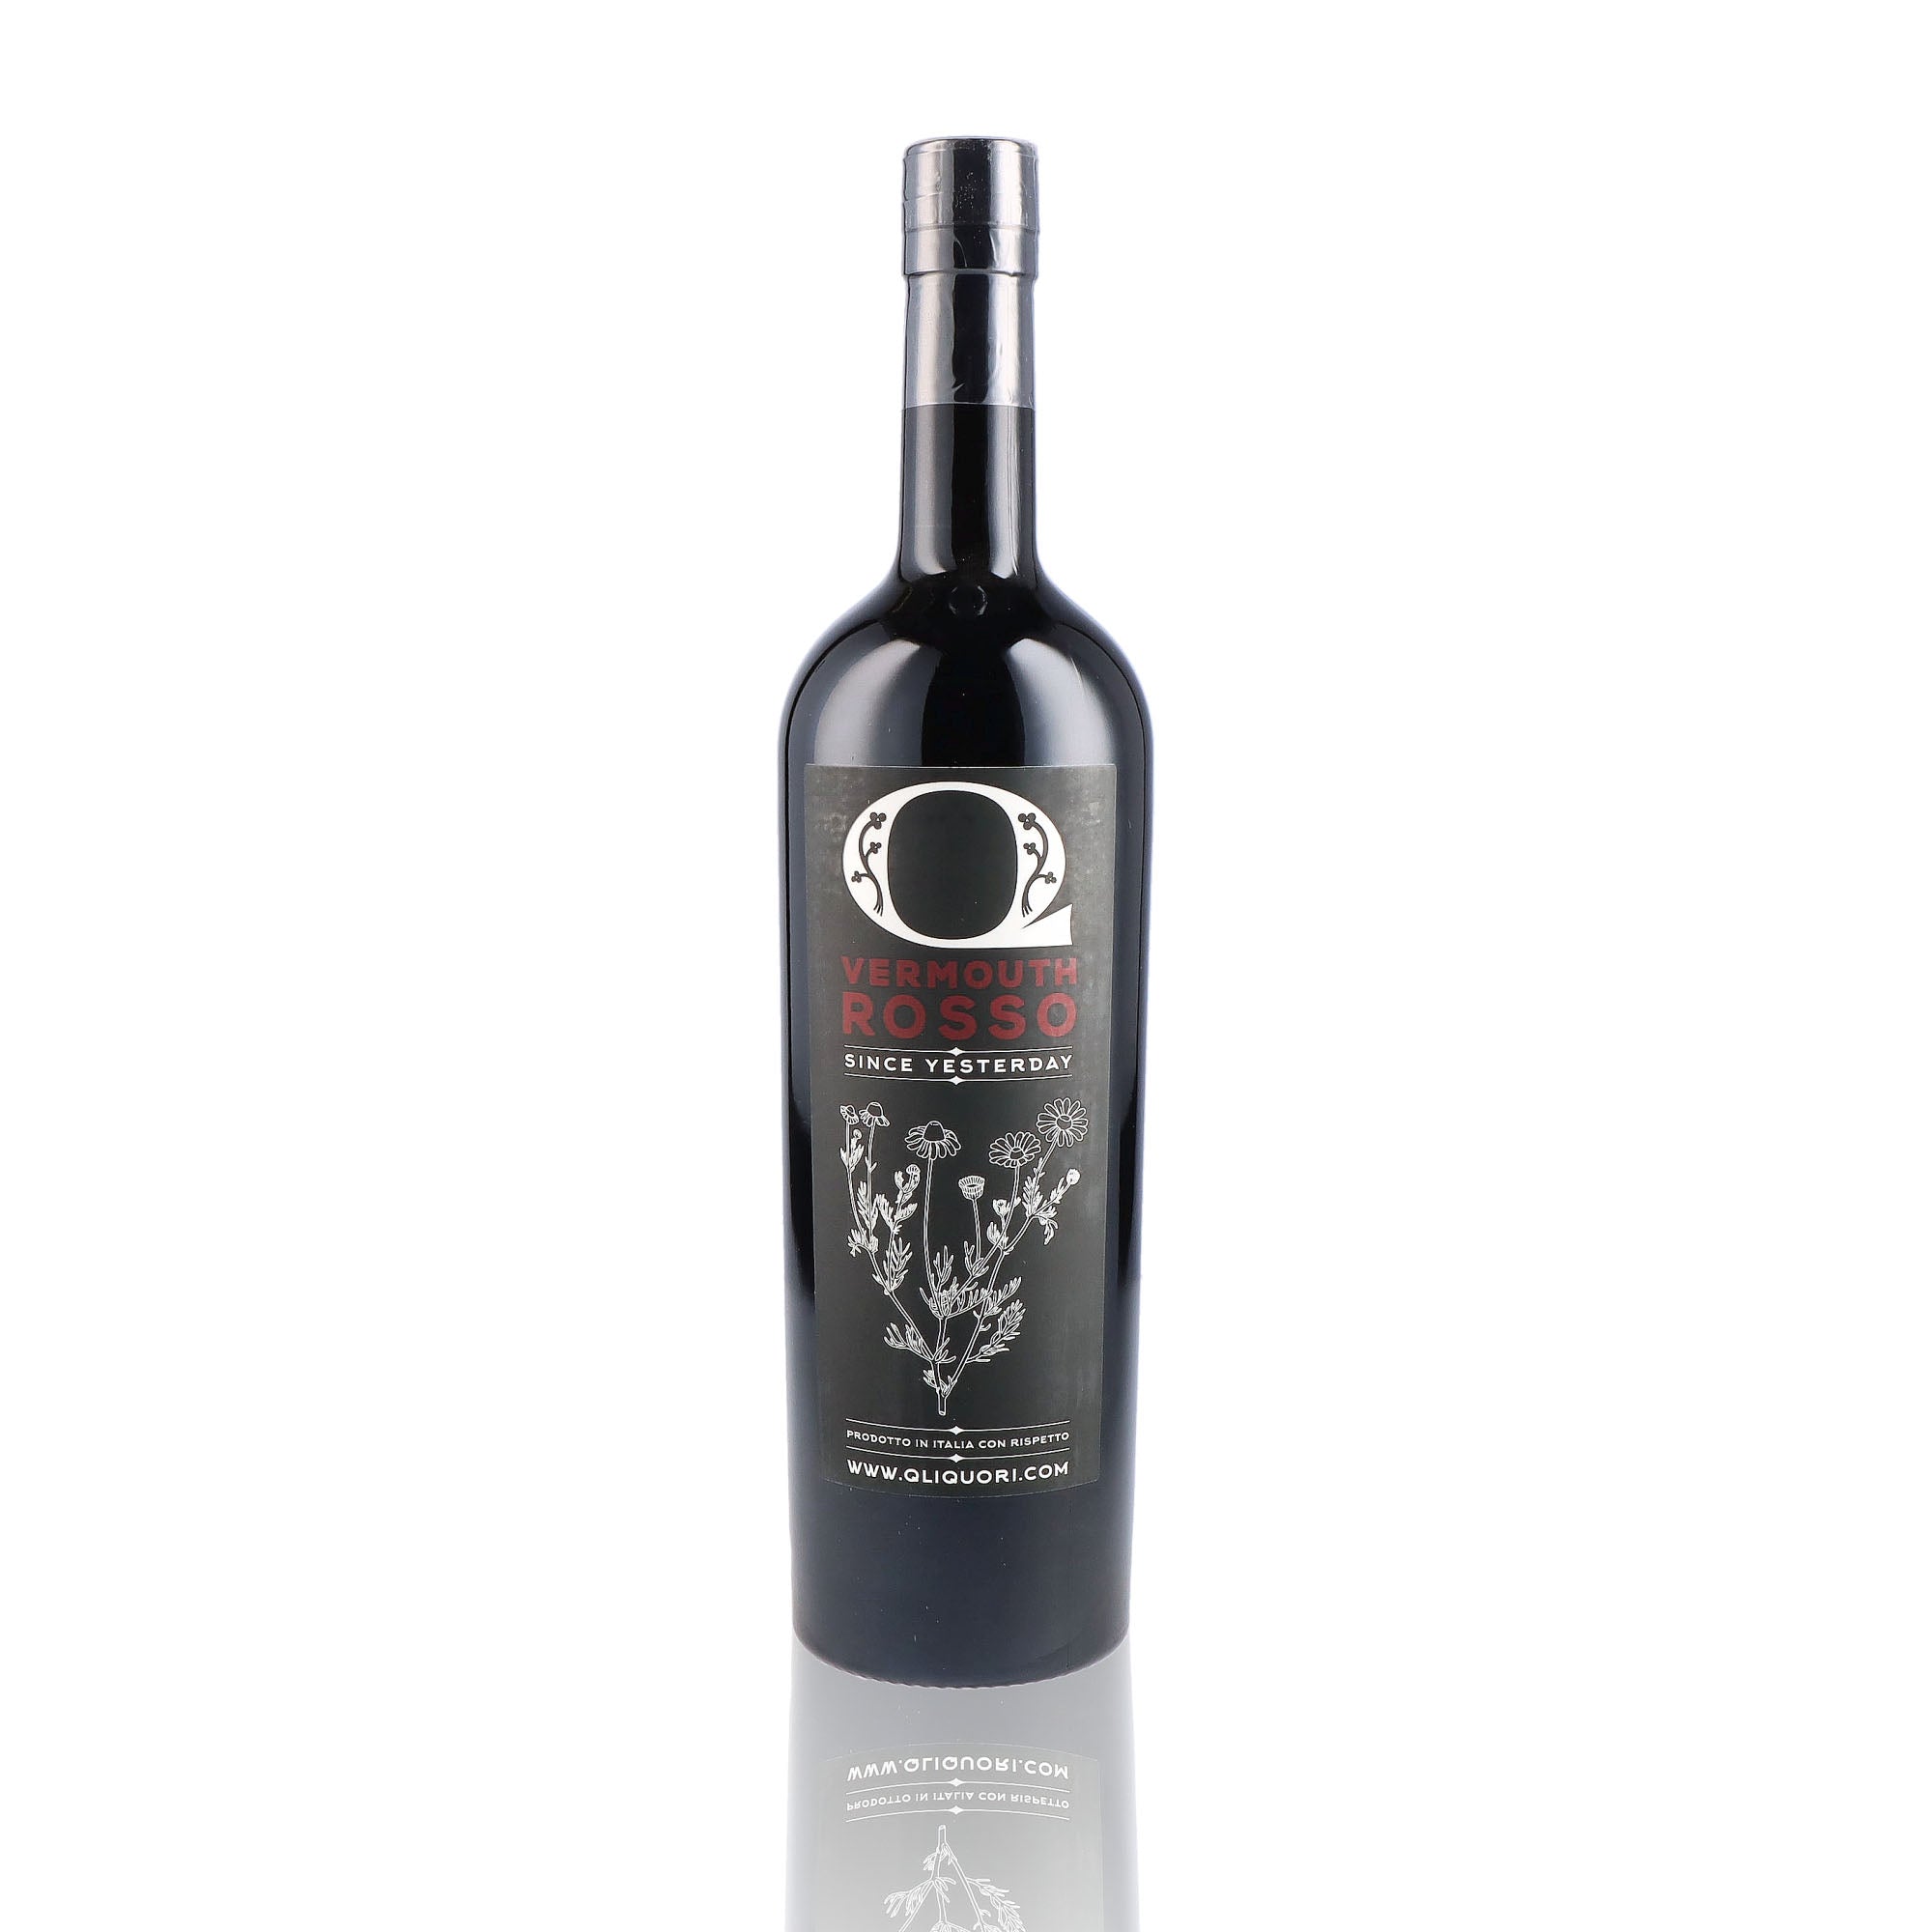 Une bouteille de vermouth, de la marque Quagliarini, nommée Rosso.